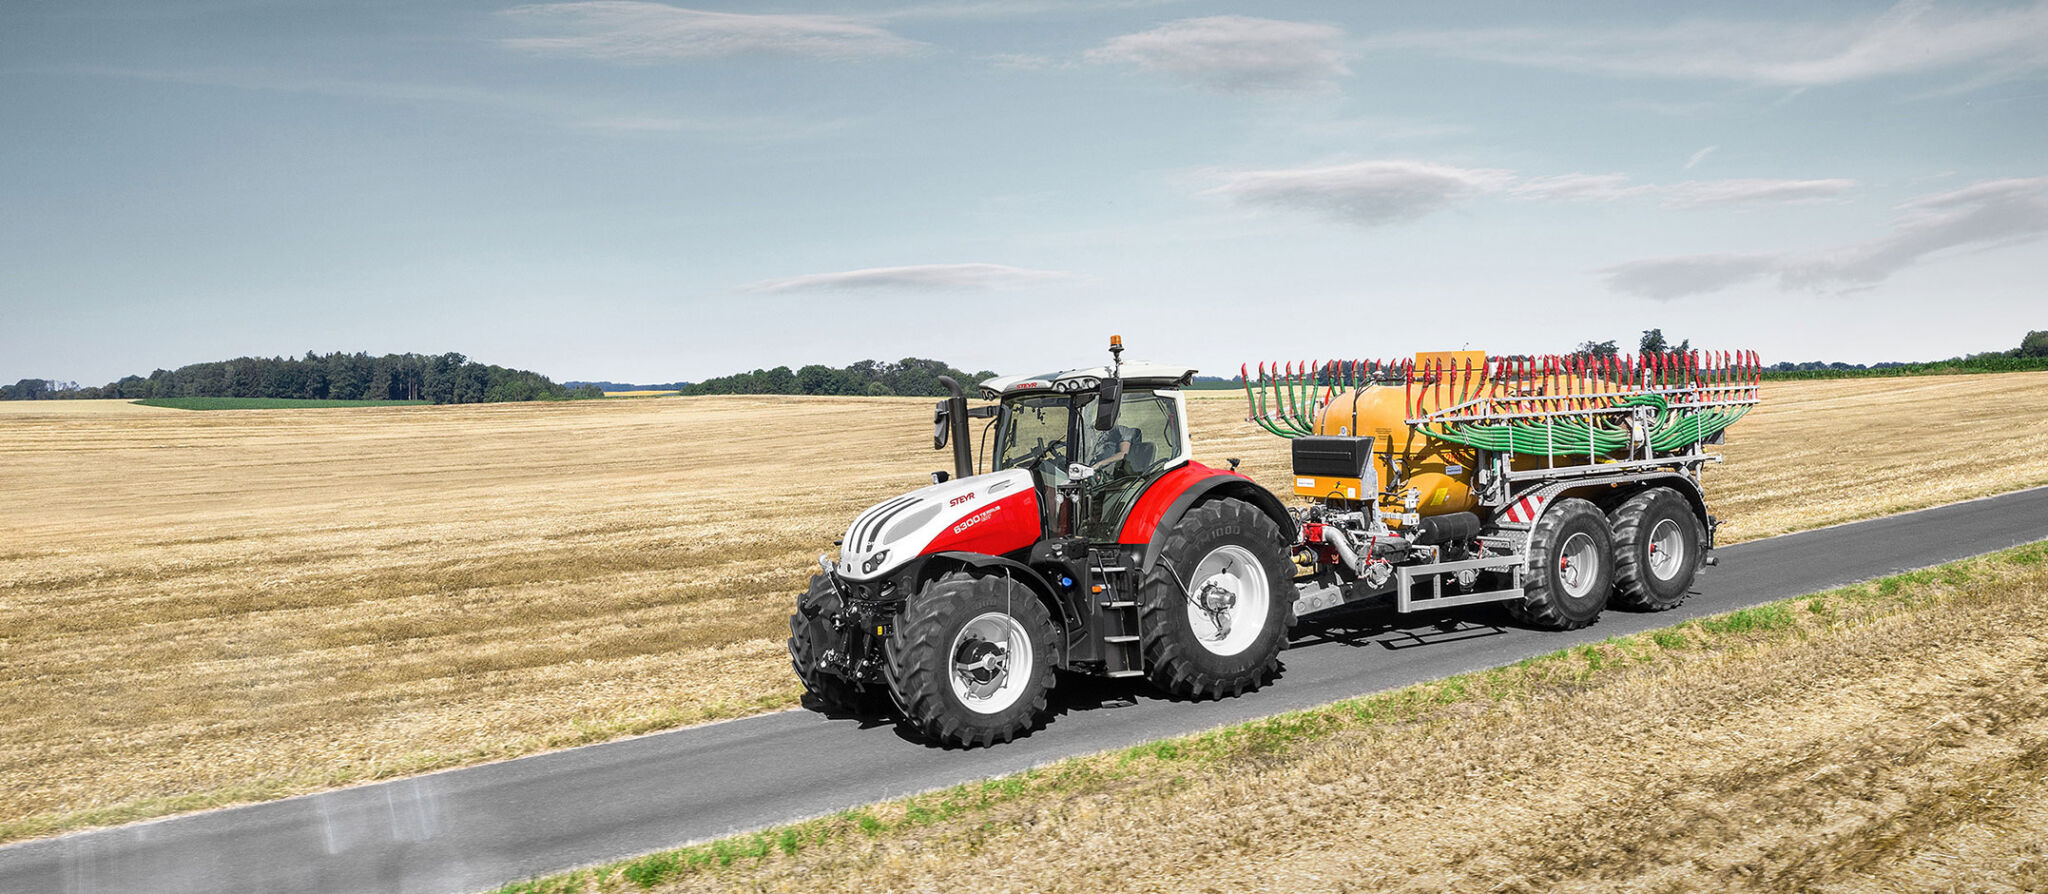 Steyr-Traktoren jetzt mit zentraler Reifendruckregelung - AGRARTECHNIK